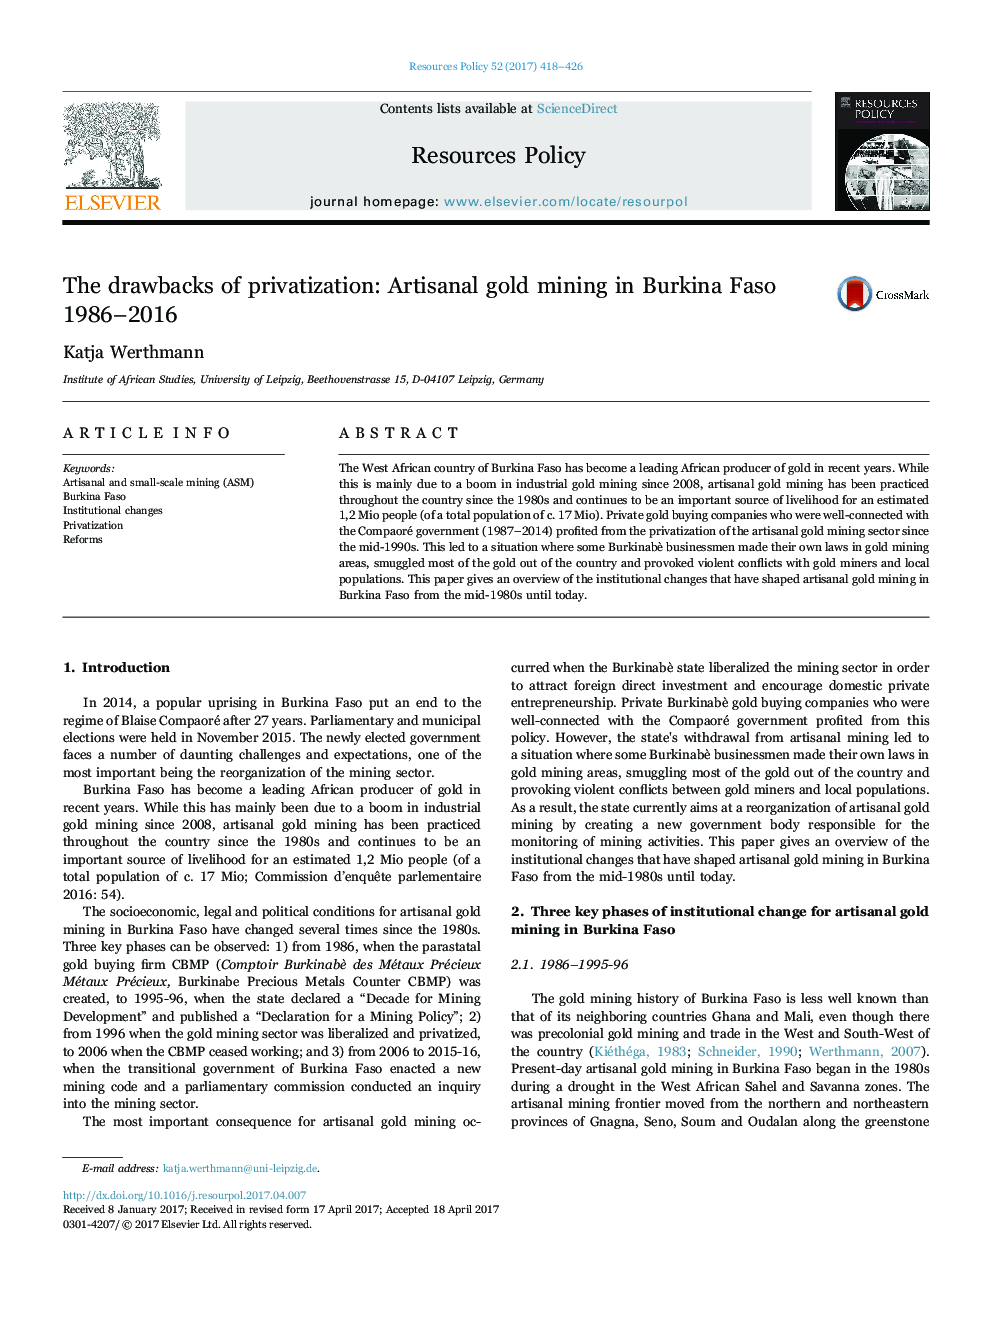 اشکالات خصوصی سازی: استخراج طلا در صنایع دستی در بورکینافاسو 1986 تا 2016 